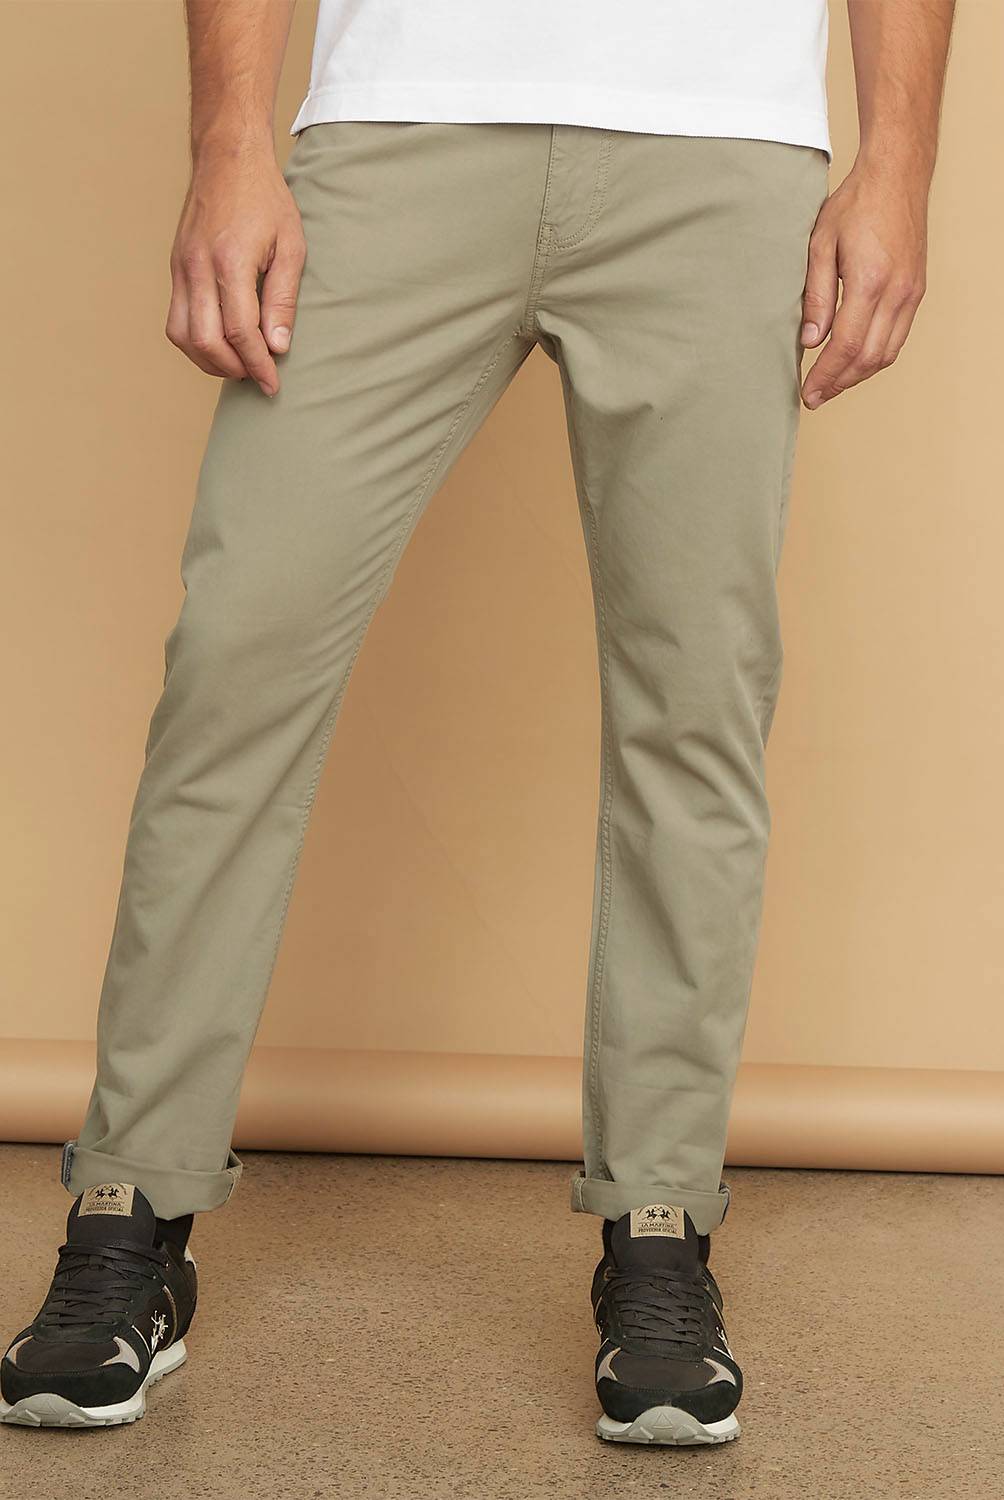 Pantalón Nuevo, Marca HOLLISTER, Talla 34×32, Medidas: 44 cm de